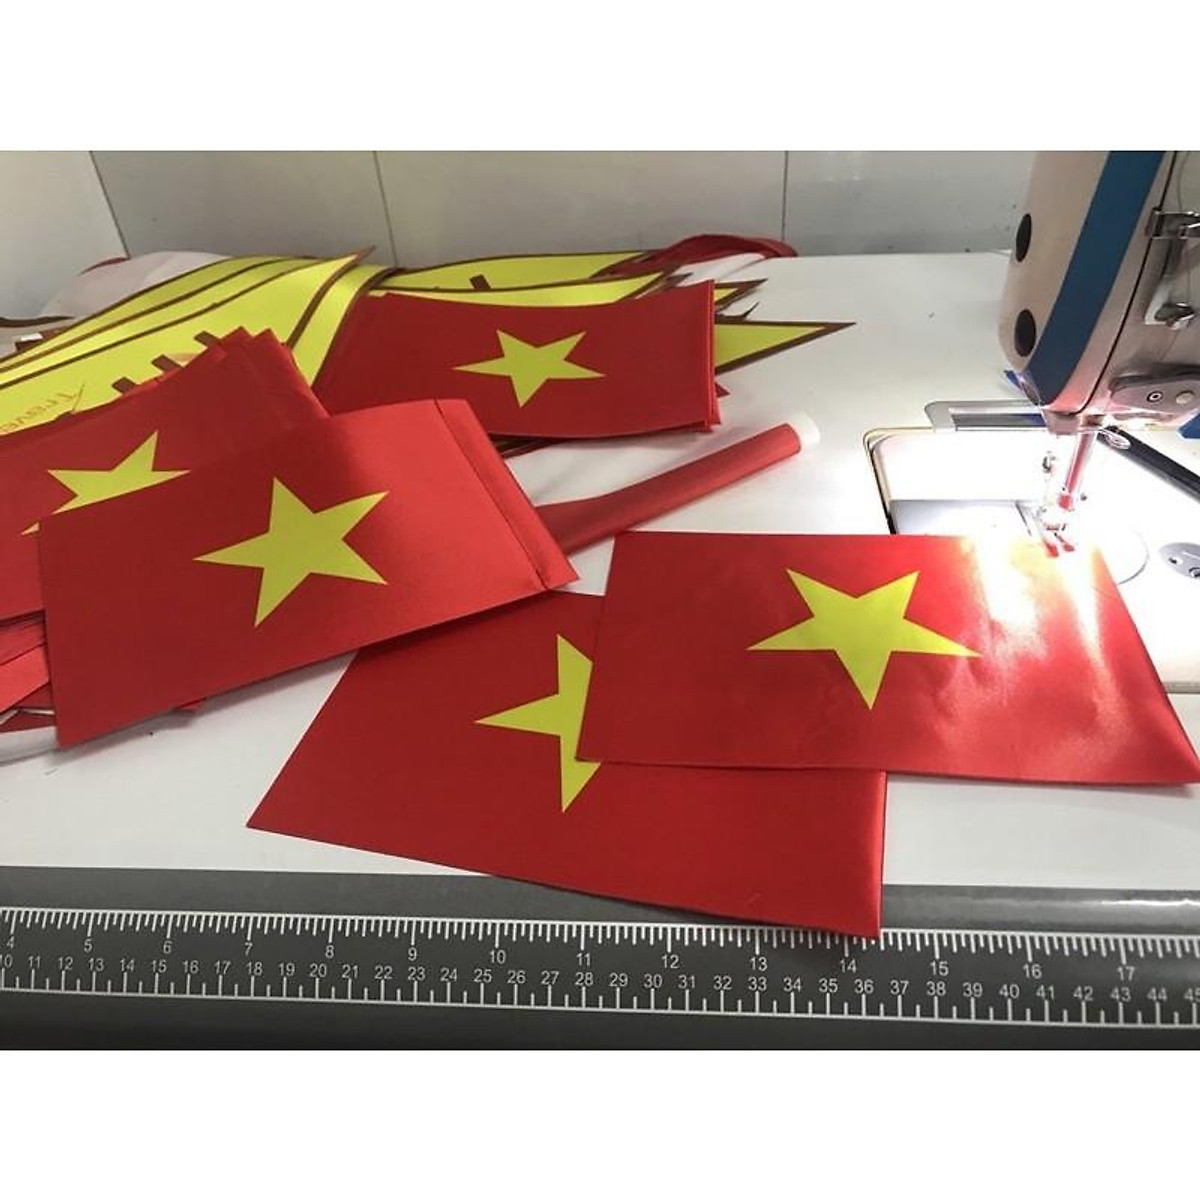 Lá cờ để bàn Việt Nam, lá cờ để bàn các nước - Trang trí nhà cửa khác